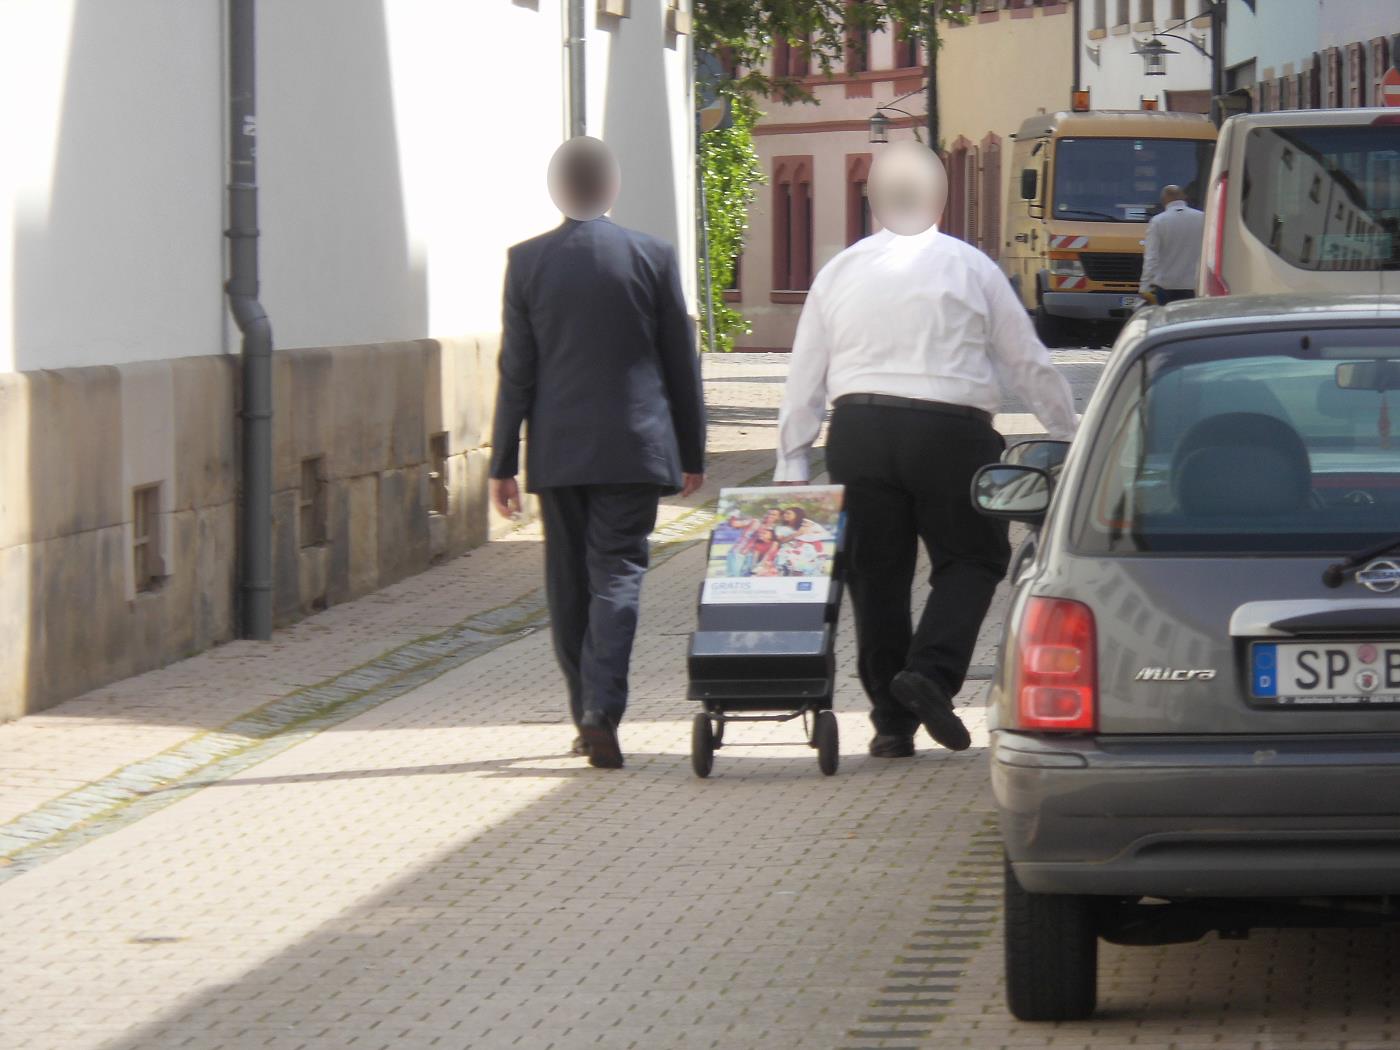 Flohmarkt in Speyer und Zeugen Jehovas mit alter Literatur